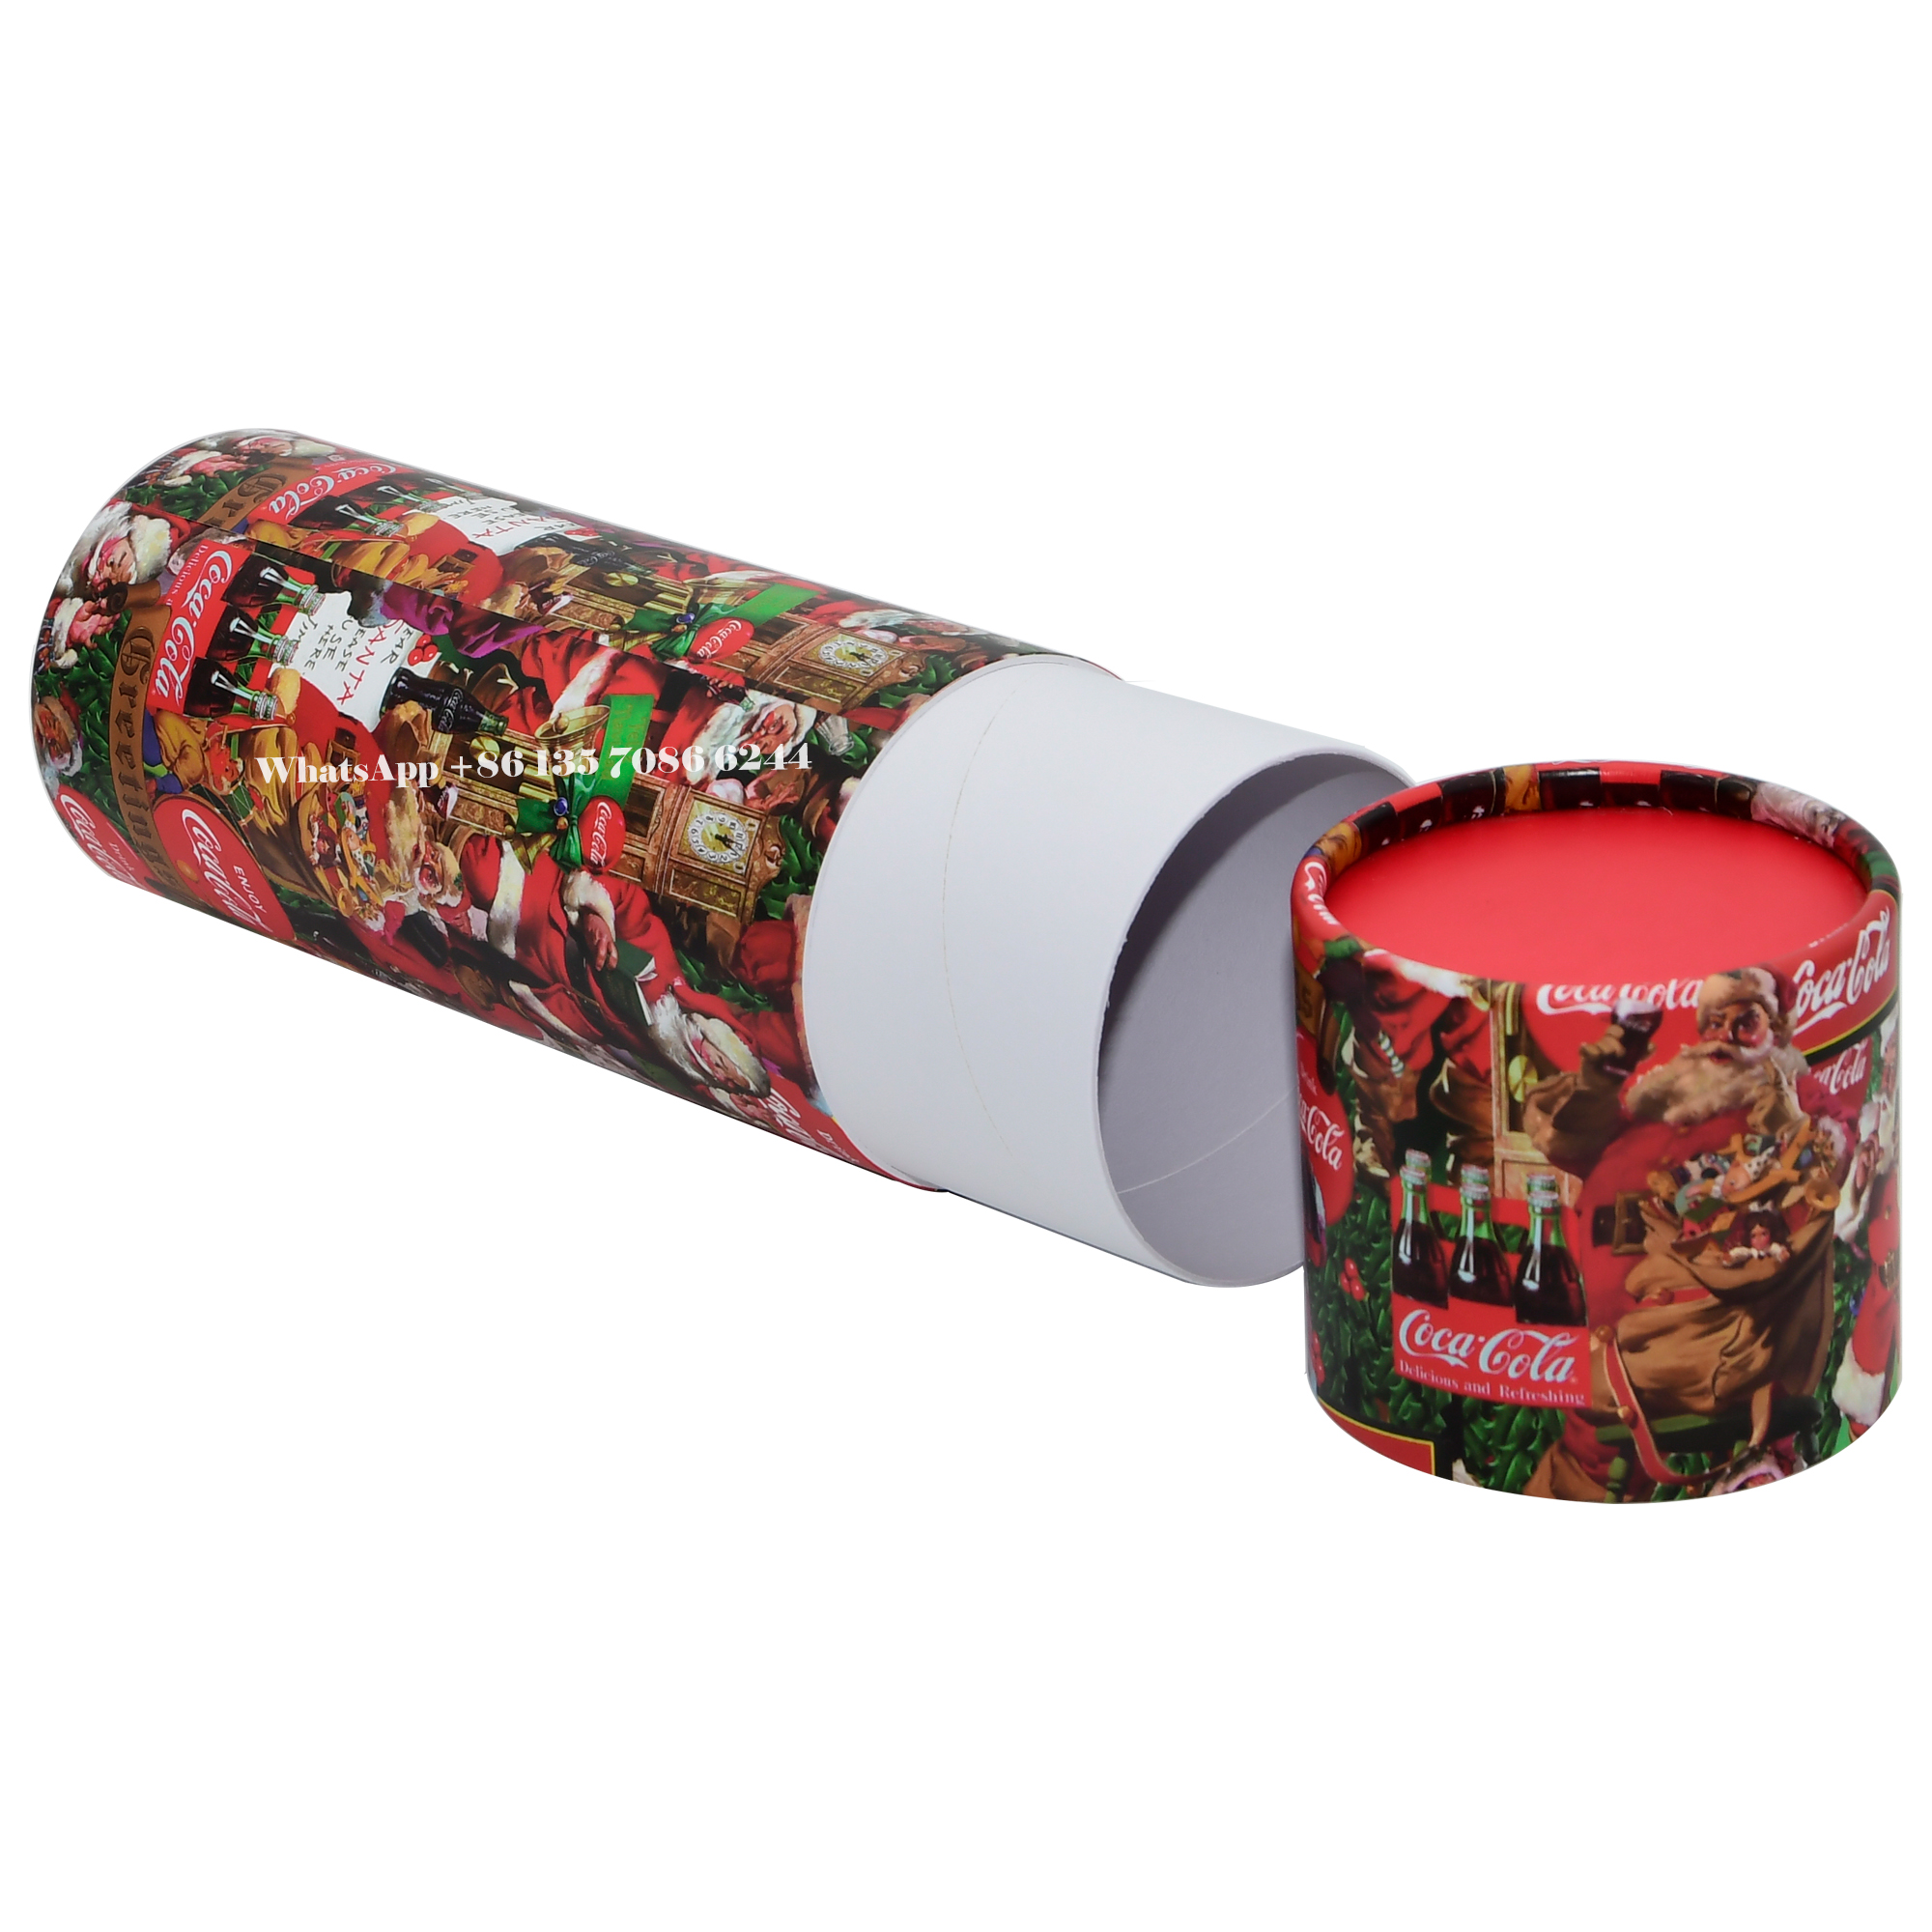 Праздничная новогодняя упаковка Coca-Cola из бумаги в тубах  